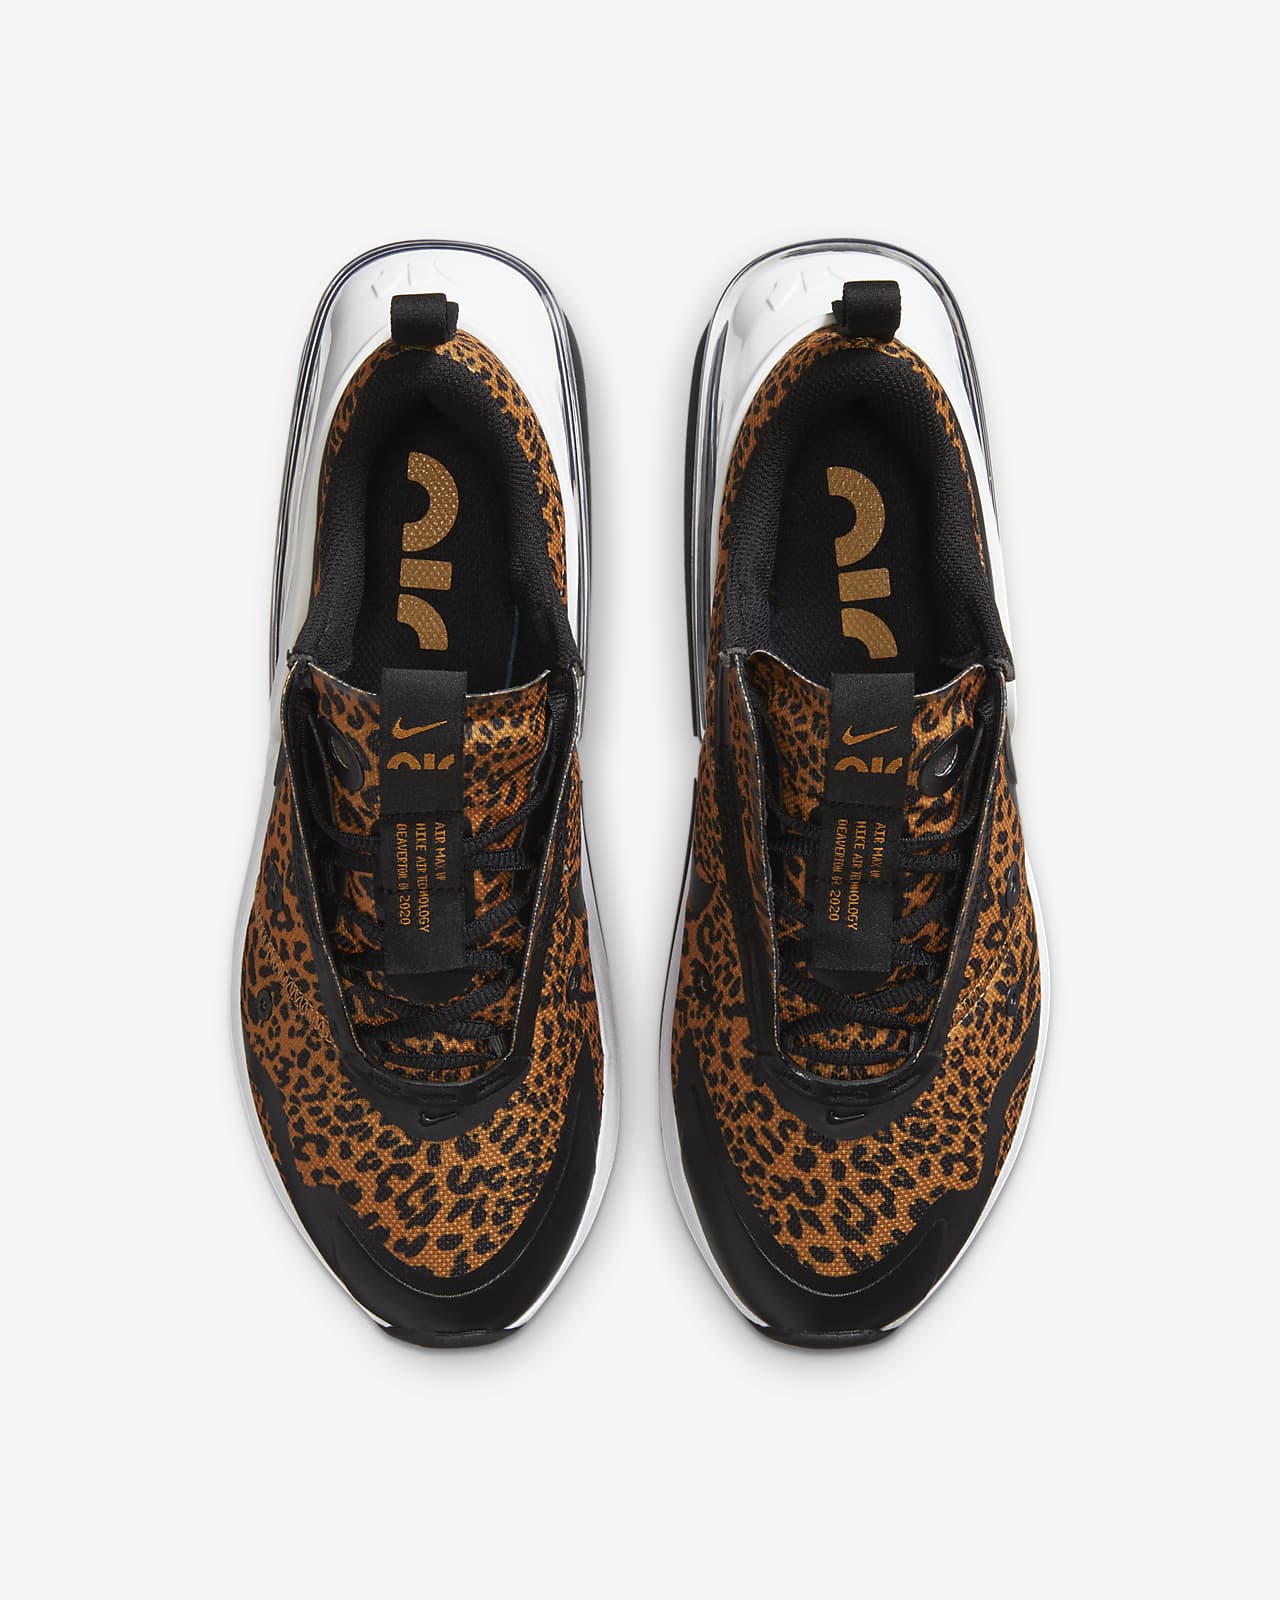 nike air max womens leopard print